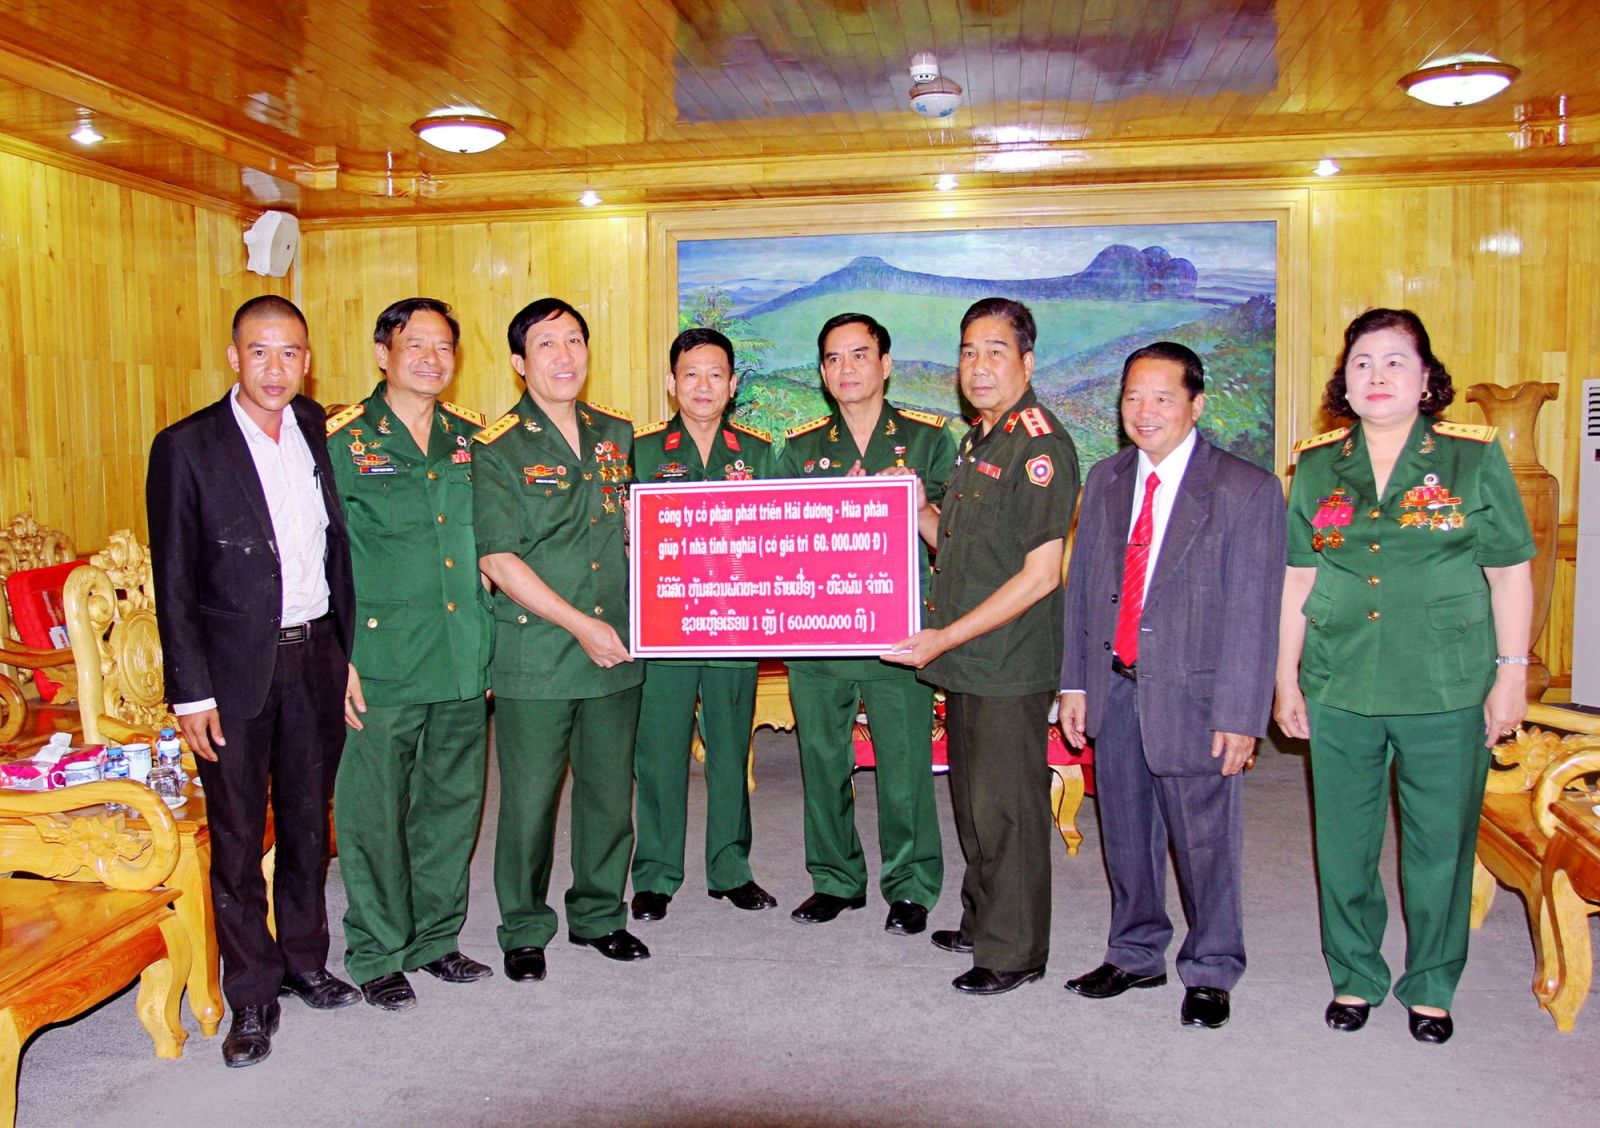 Hội Doanh nghiệp CCB tỉnh Hải Dương trao tặng Nhà tình nghĩa cho CCB tỉnh Hủa Phăn (Lào), năm 2018. Ảnh: Đoàn Anh Hải.